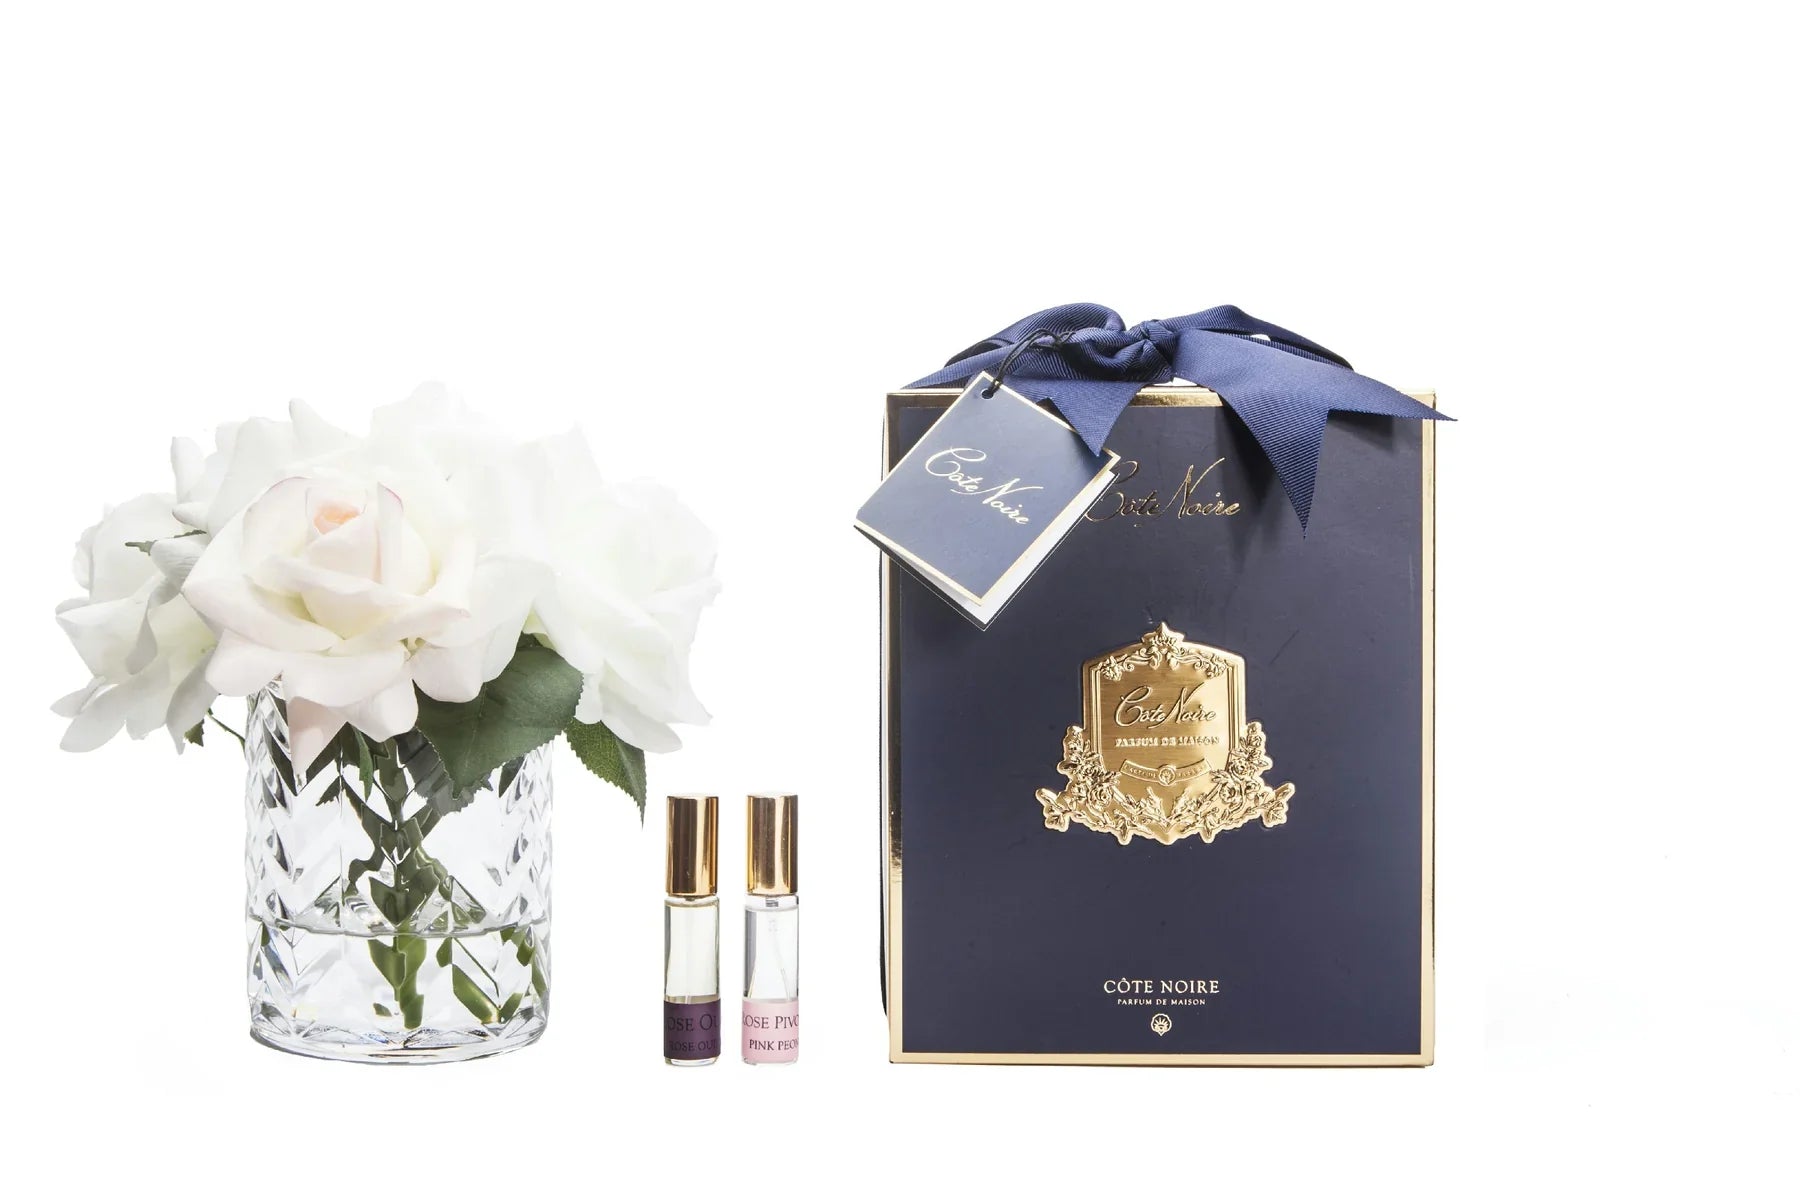 weisse rosen in durchsichtigem glas mit muster. daneben zwei parfumsprays und blaue geschenkbox mit schleife.